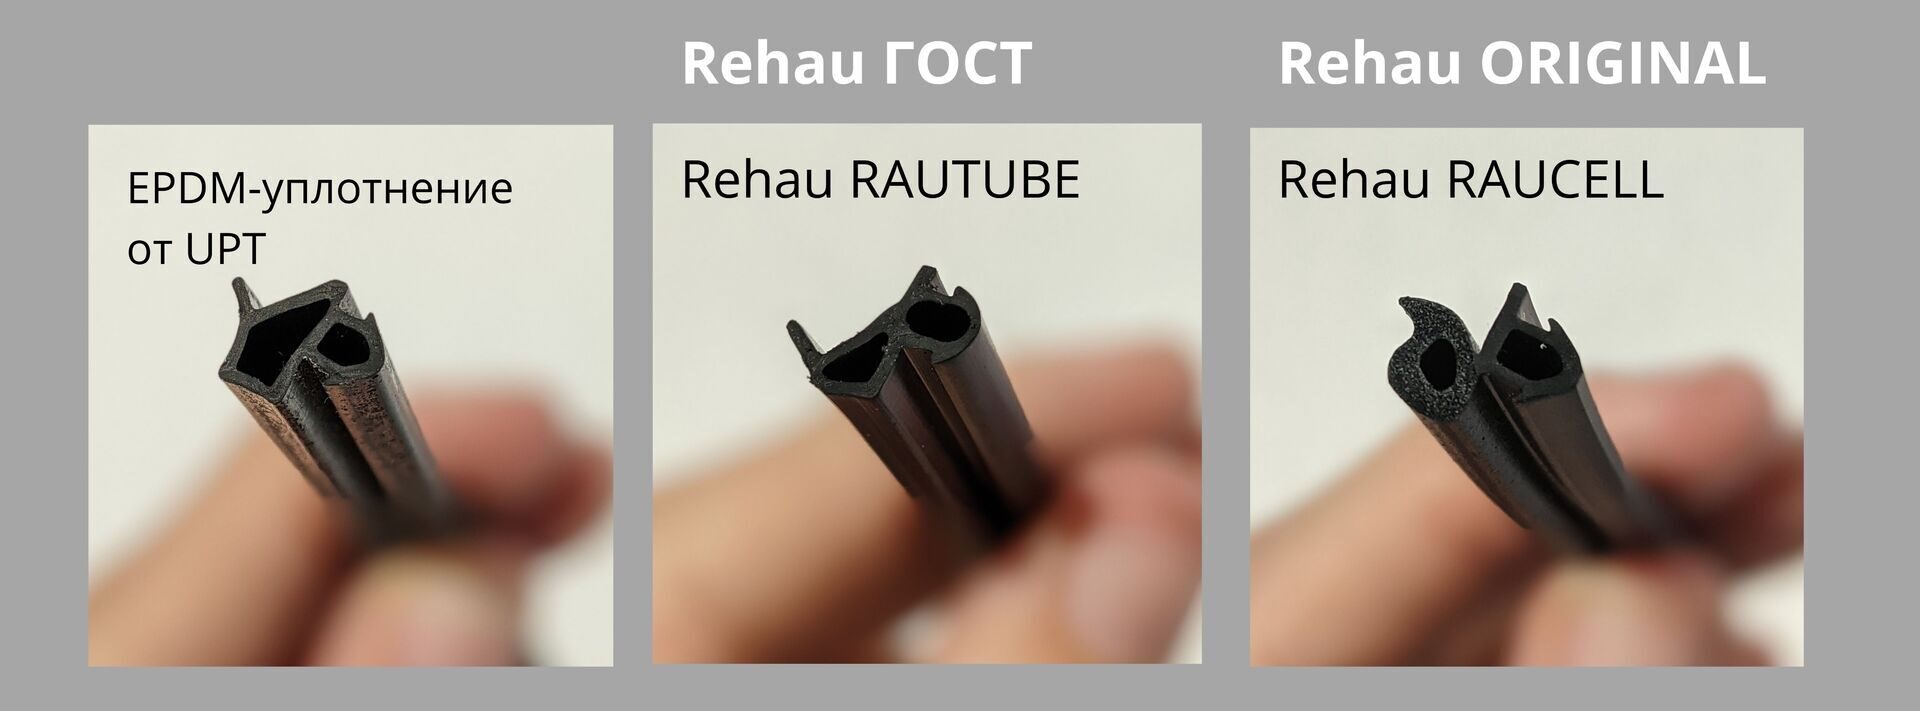 Уплотнитель rehau (рехау) для окон, уплотнитель для окон rehau (рехау), виды и характеристики уплотнителей rehau (рехау)